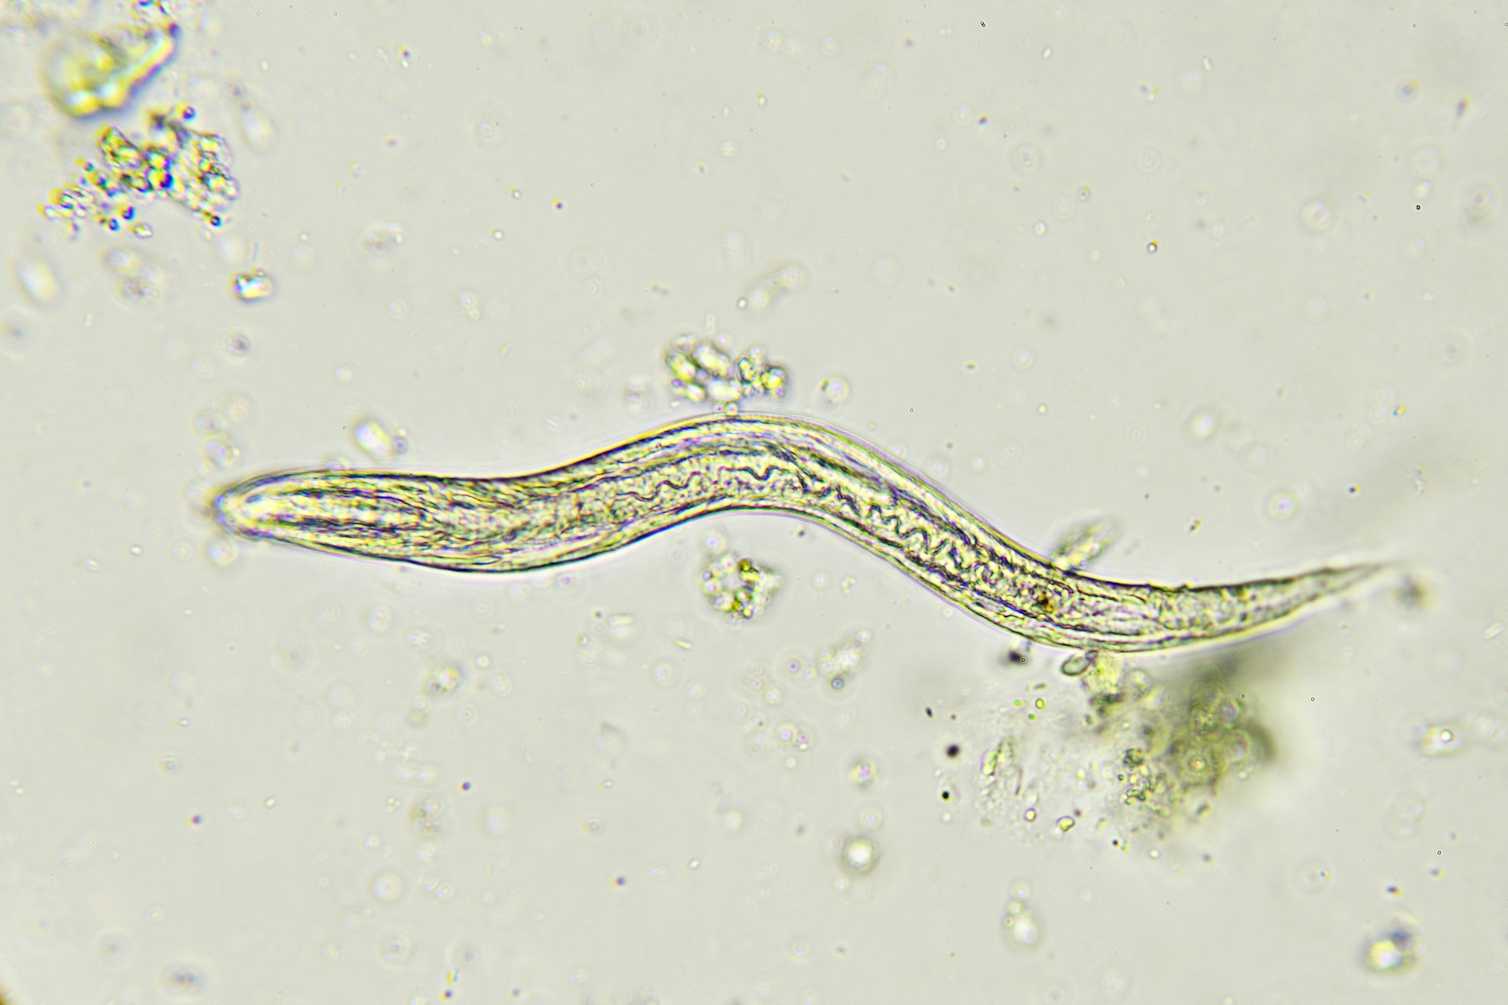 Strongyloides личинки